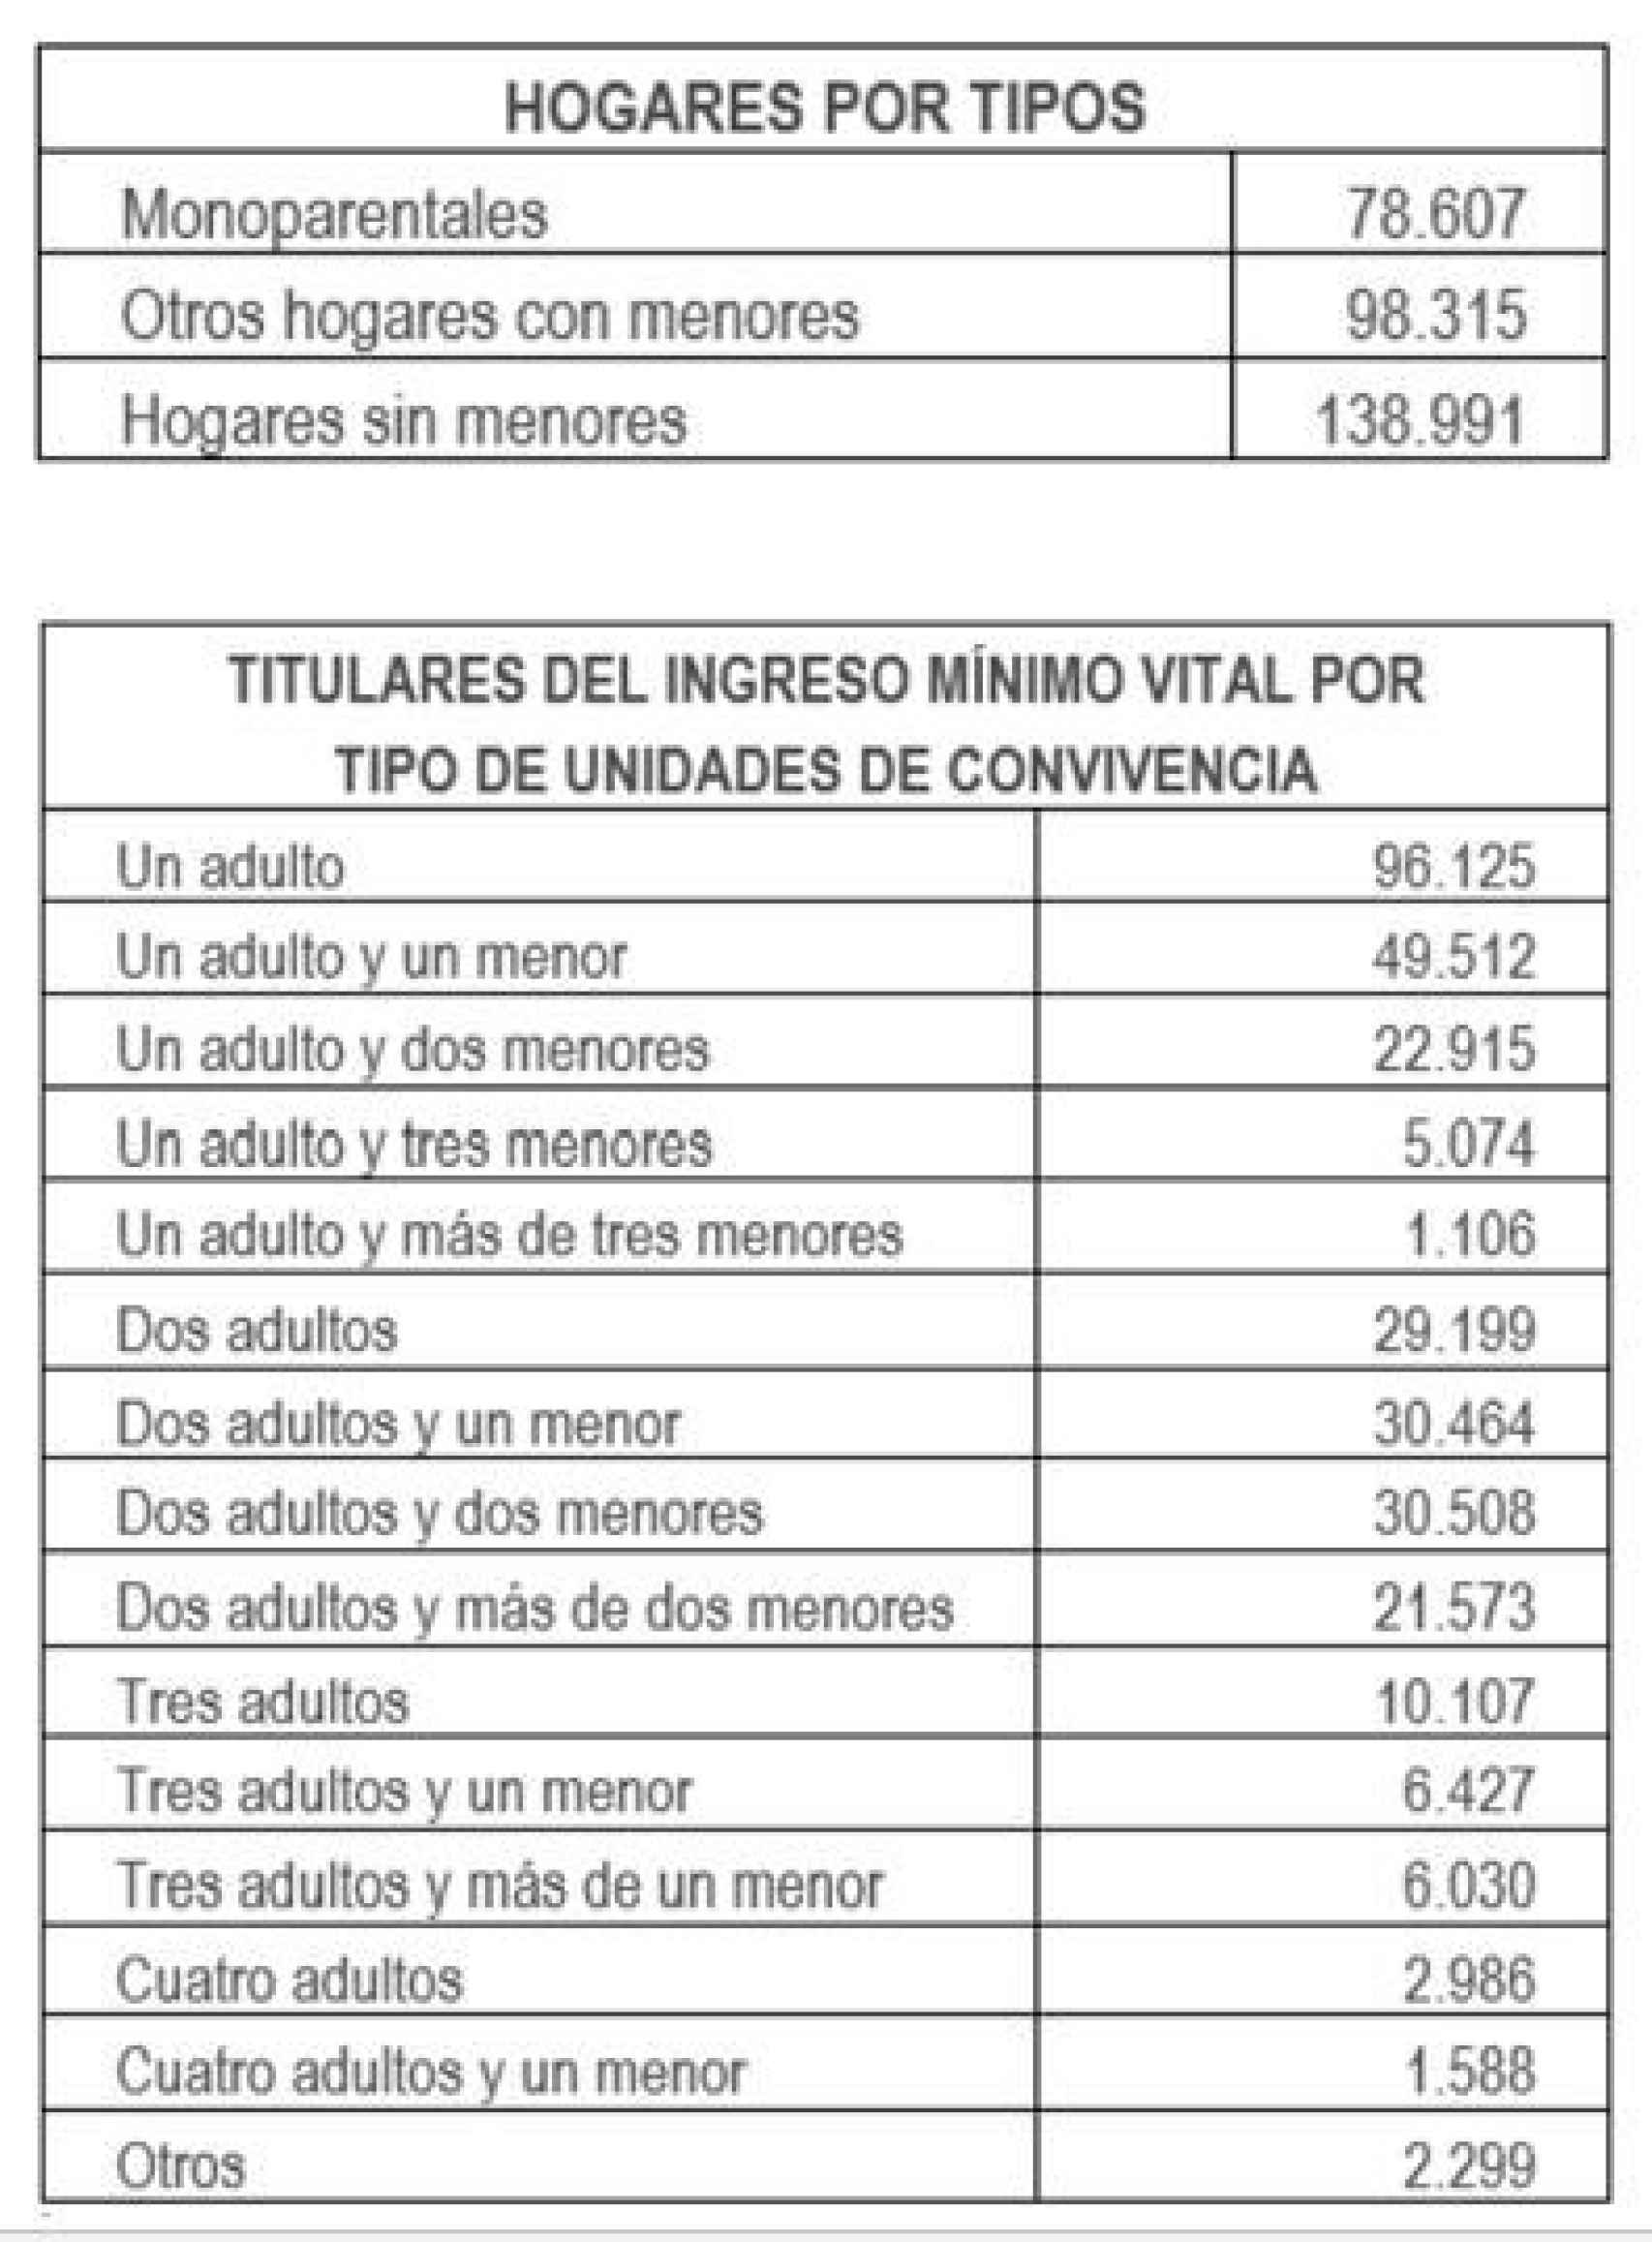 Tabla de ingresos del Gobierno sobre el Ingreso Mínimo Vital.